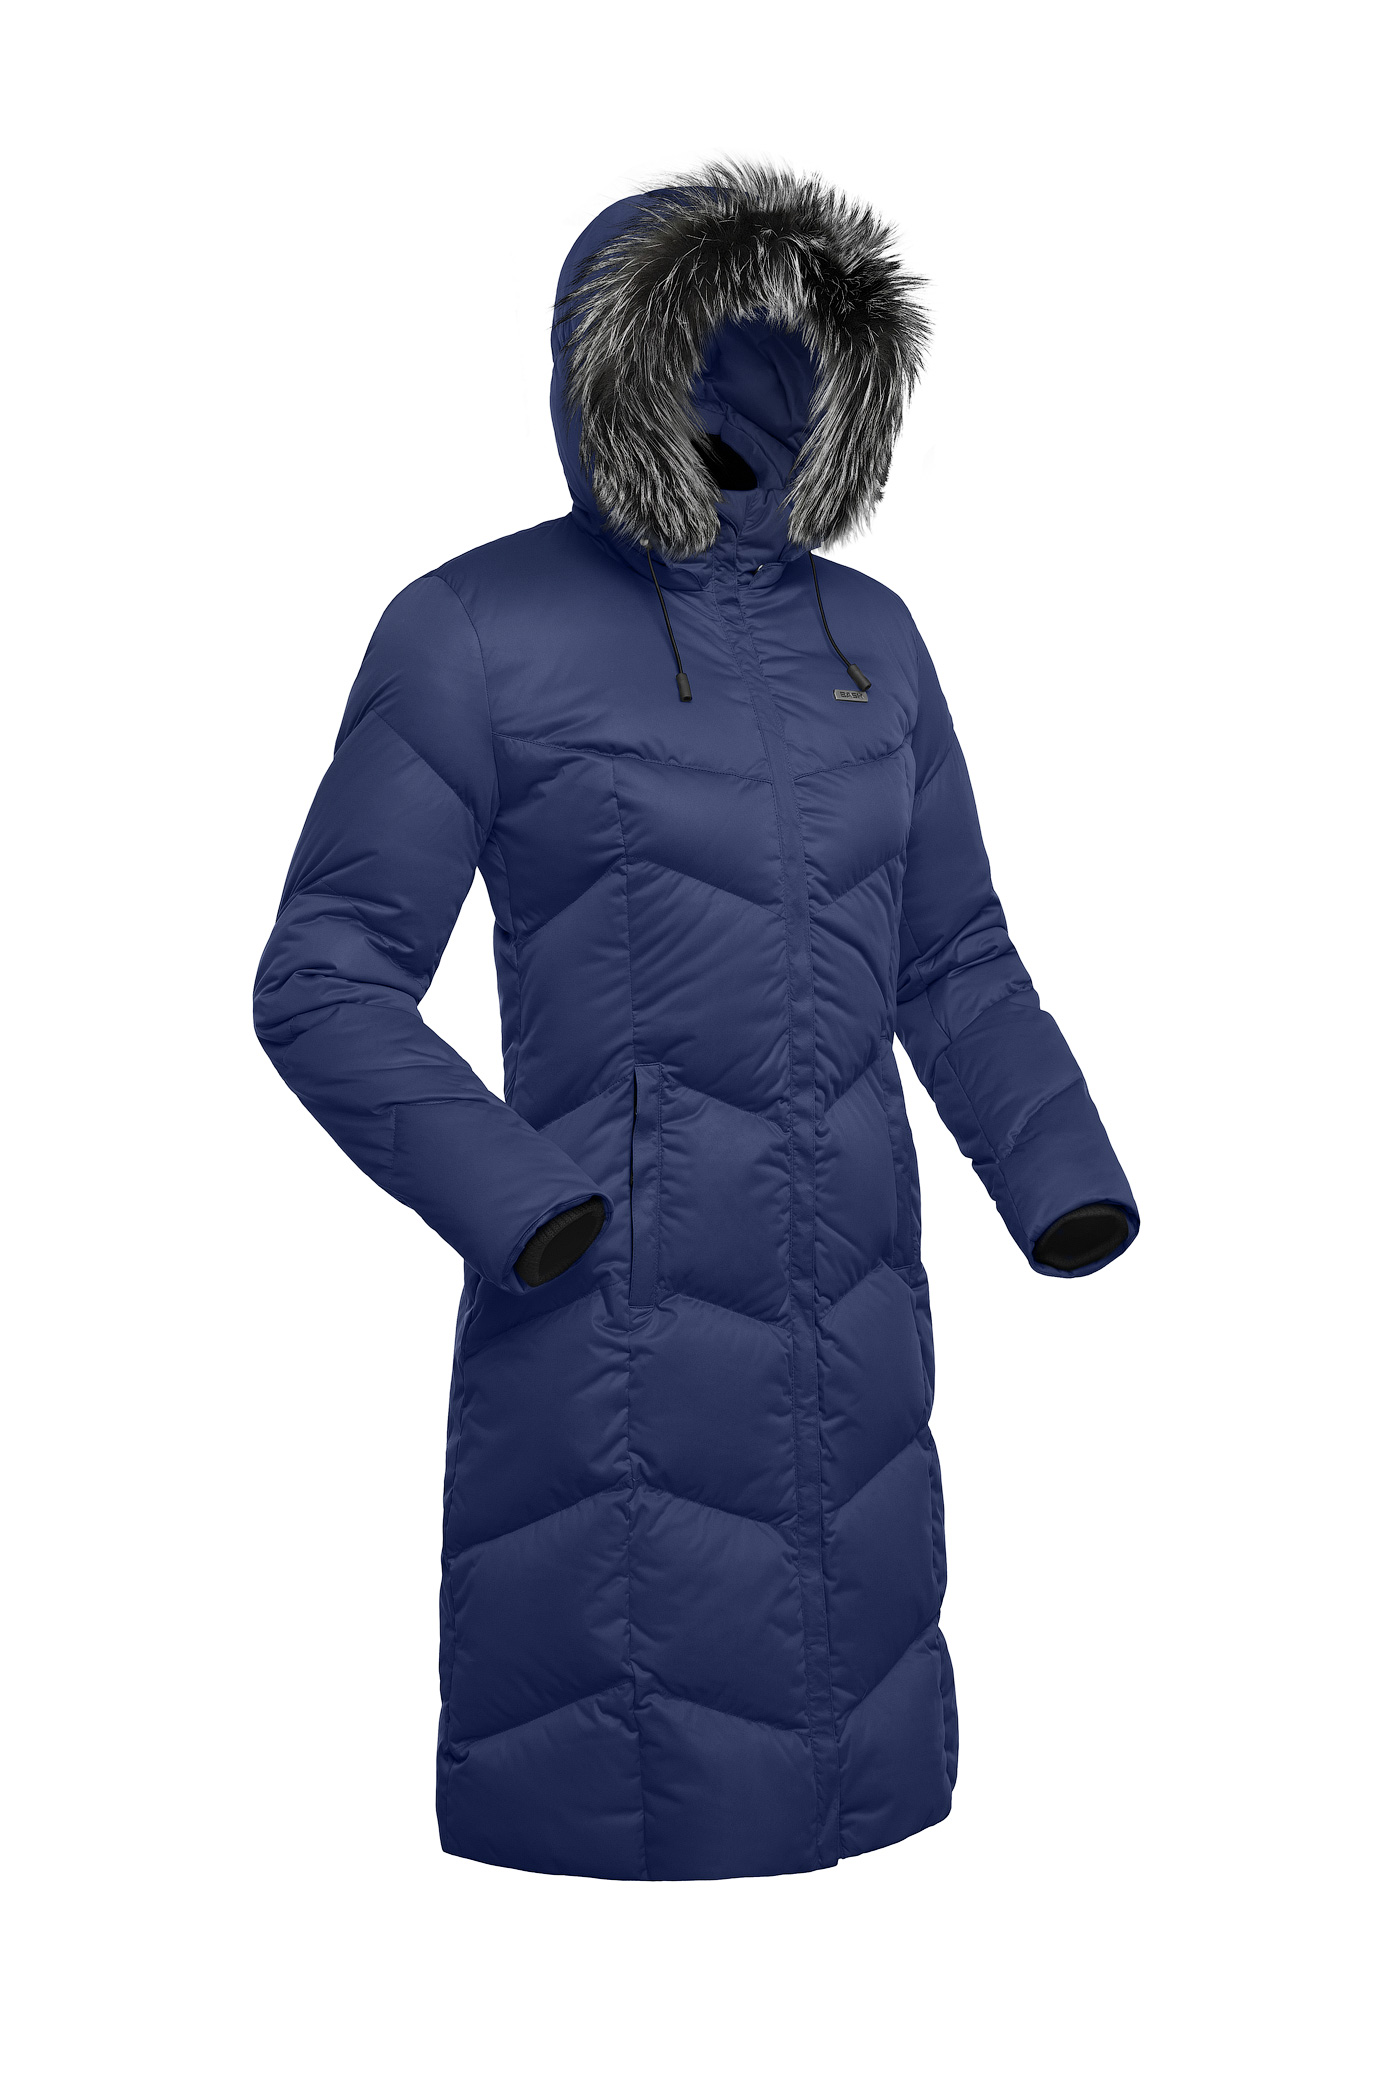 Пуховое пальто BASK SNOWFLAKE 5454 - фото 5